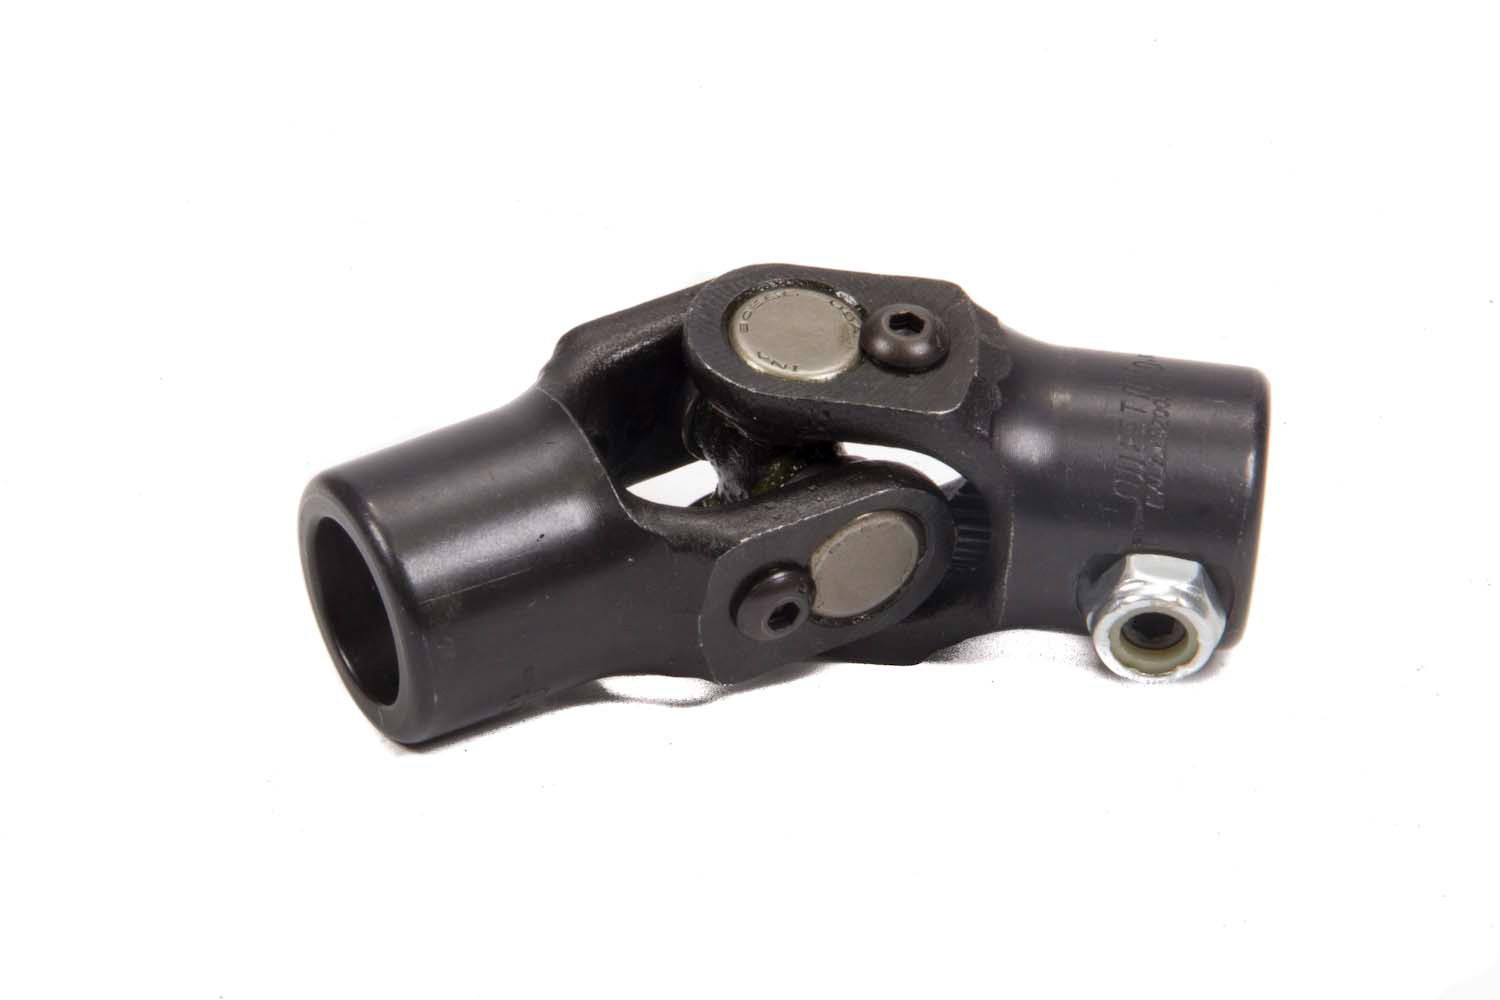 Steering Universal Joint - Single Joint - 3/4 in 30 Spline to 3/4 in 20 Spline - Steel - Black Paint - Each